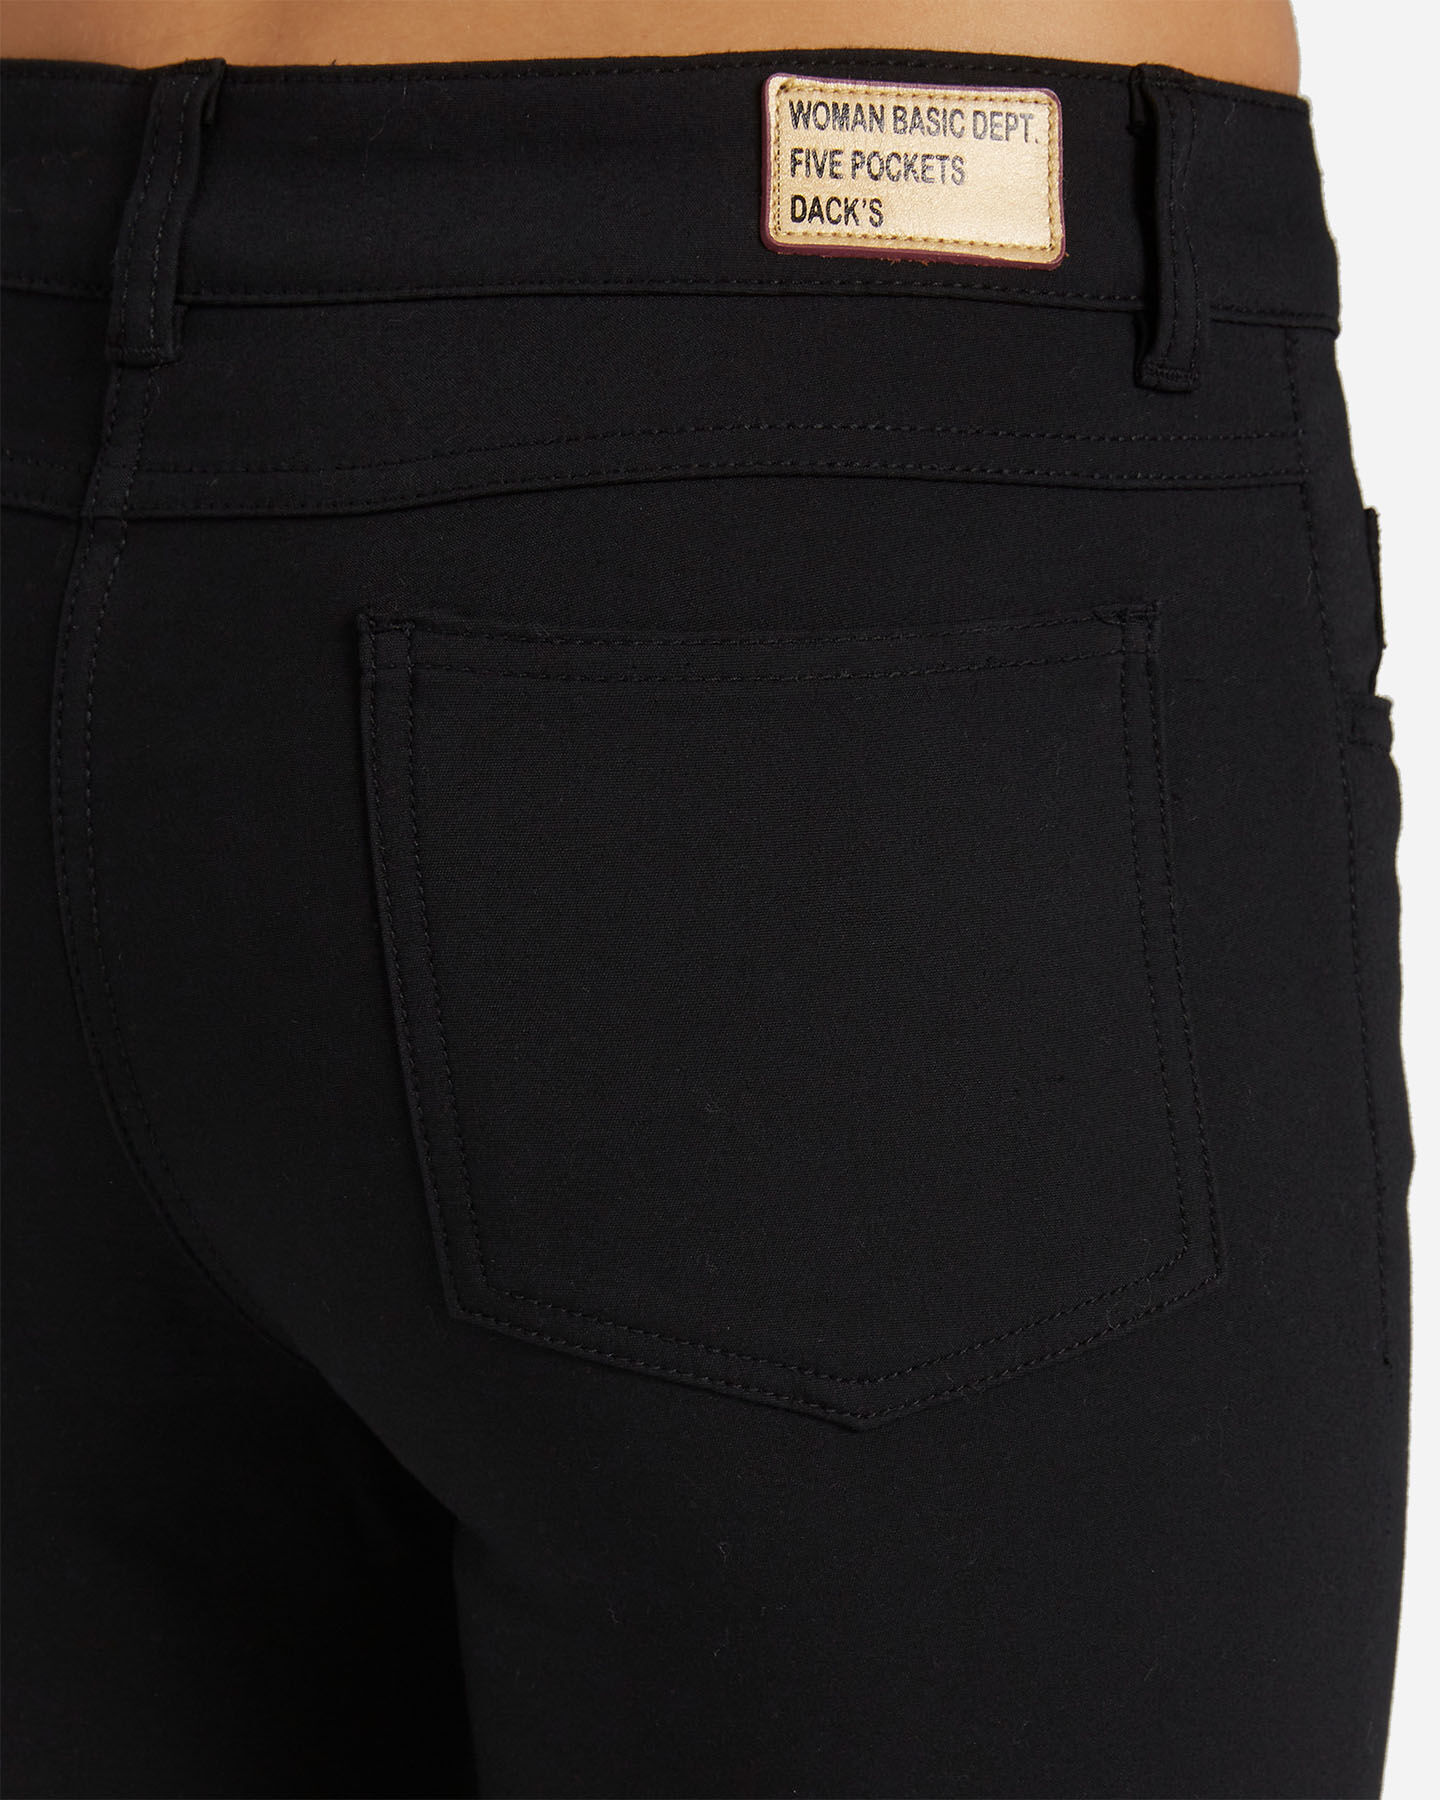  Pantalone DACK'S 5T STRETCH W S4080140|050|40 scatto 3